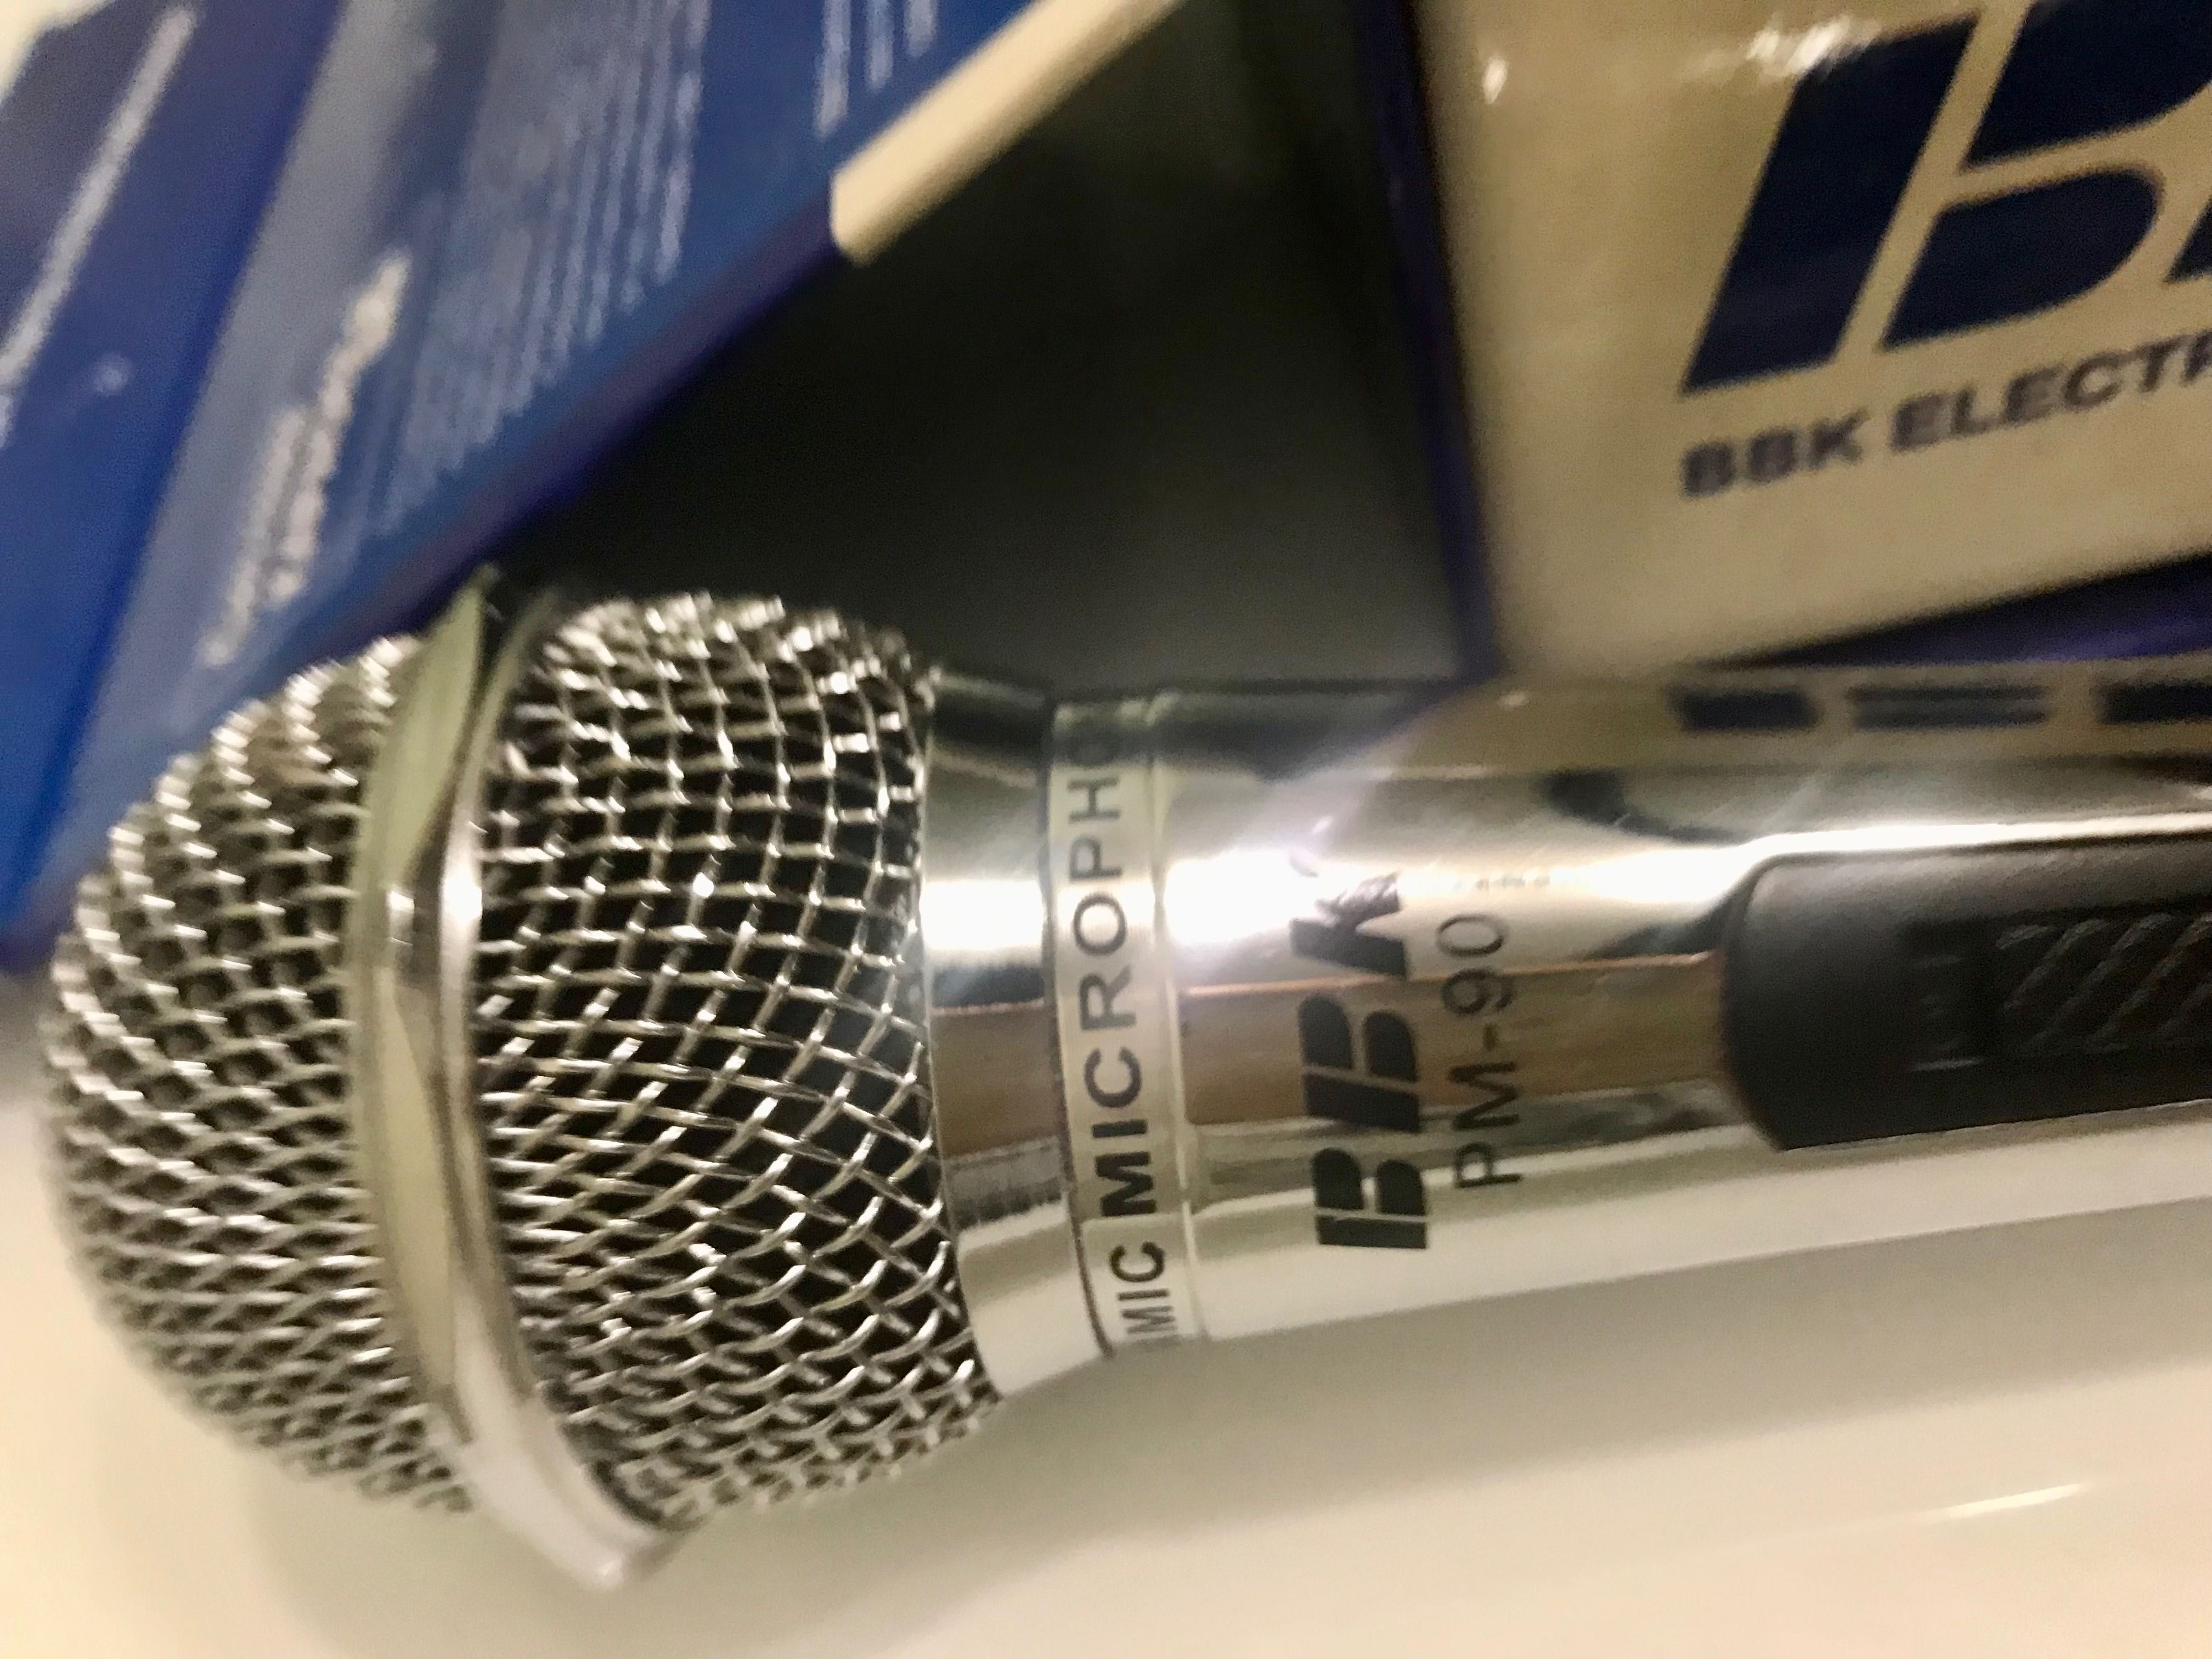 Універсальний мікрофон для караоке BBK  PM 90